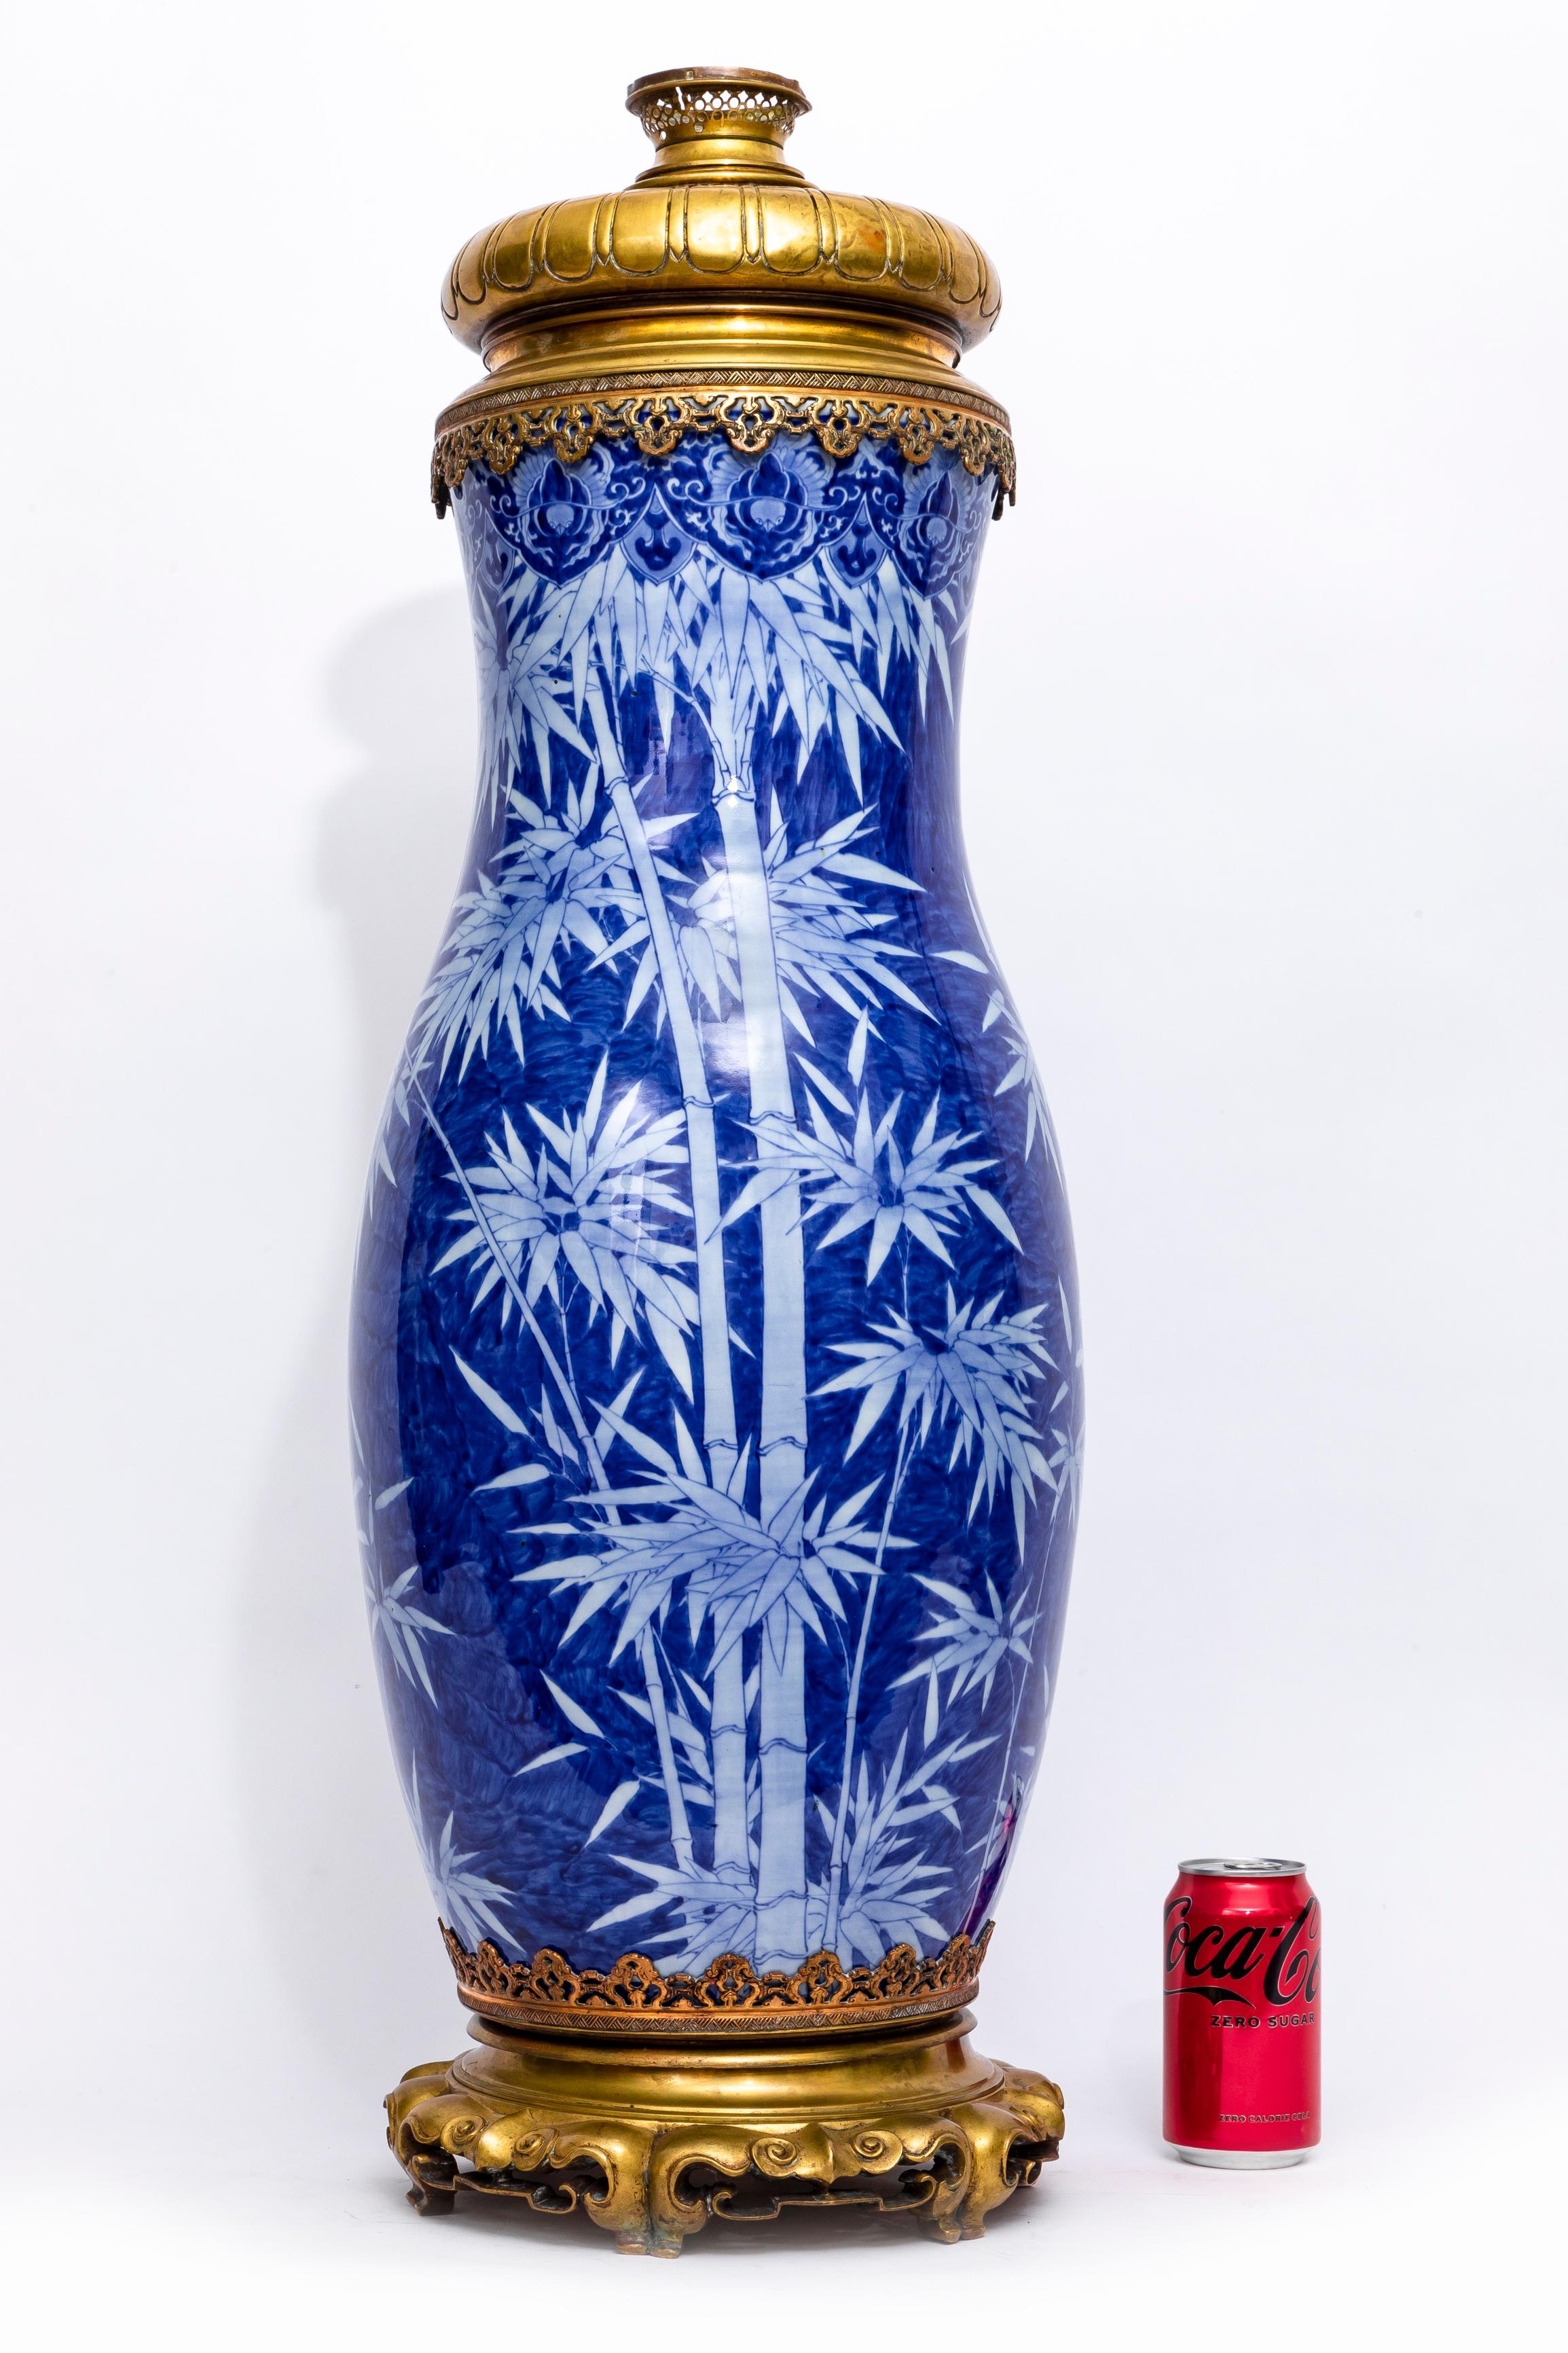 Incroyable et assez grand vase en porcelaine japonaise bleue et blanche monté en bronze doré, transformé en lampe, datant du 19e siècle. Les montures sont attribuées à E. Lievre. Ce brillant vase en porcelaine japonaise bleu et blanc est un bel